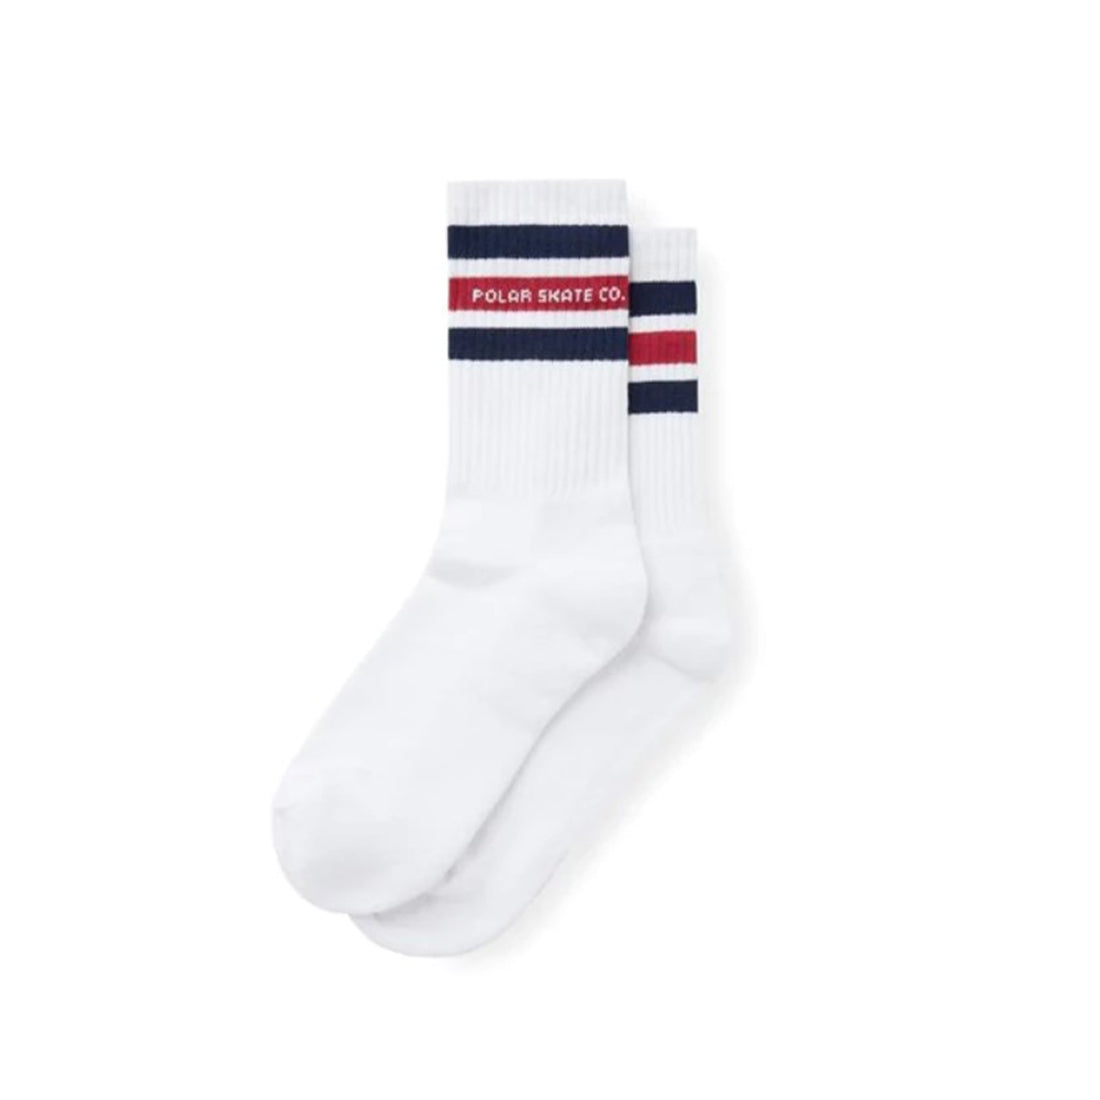 Polar Logo Socks - Fat Stripe Socks -White